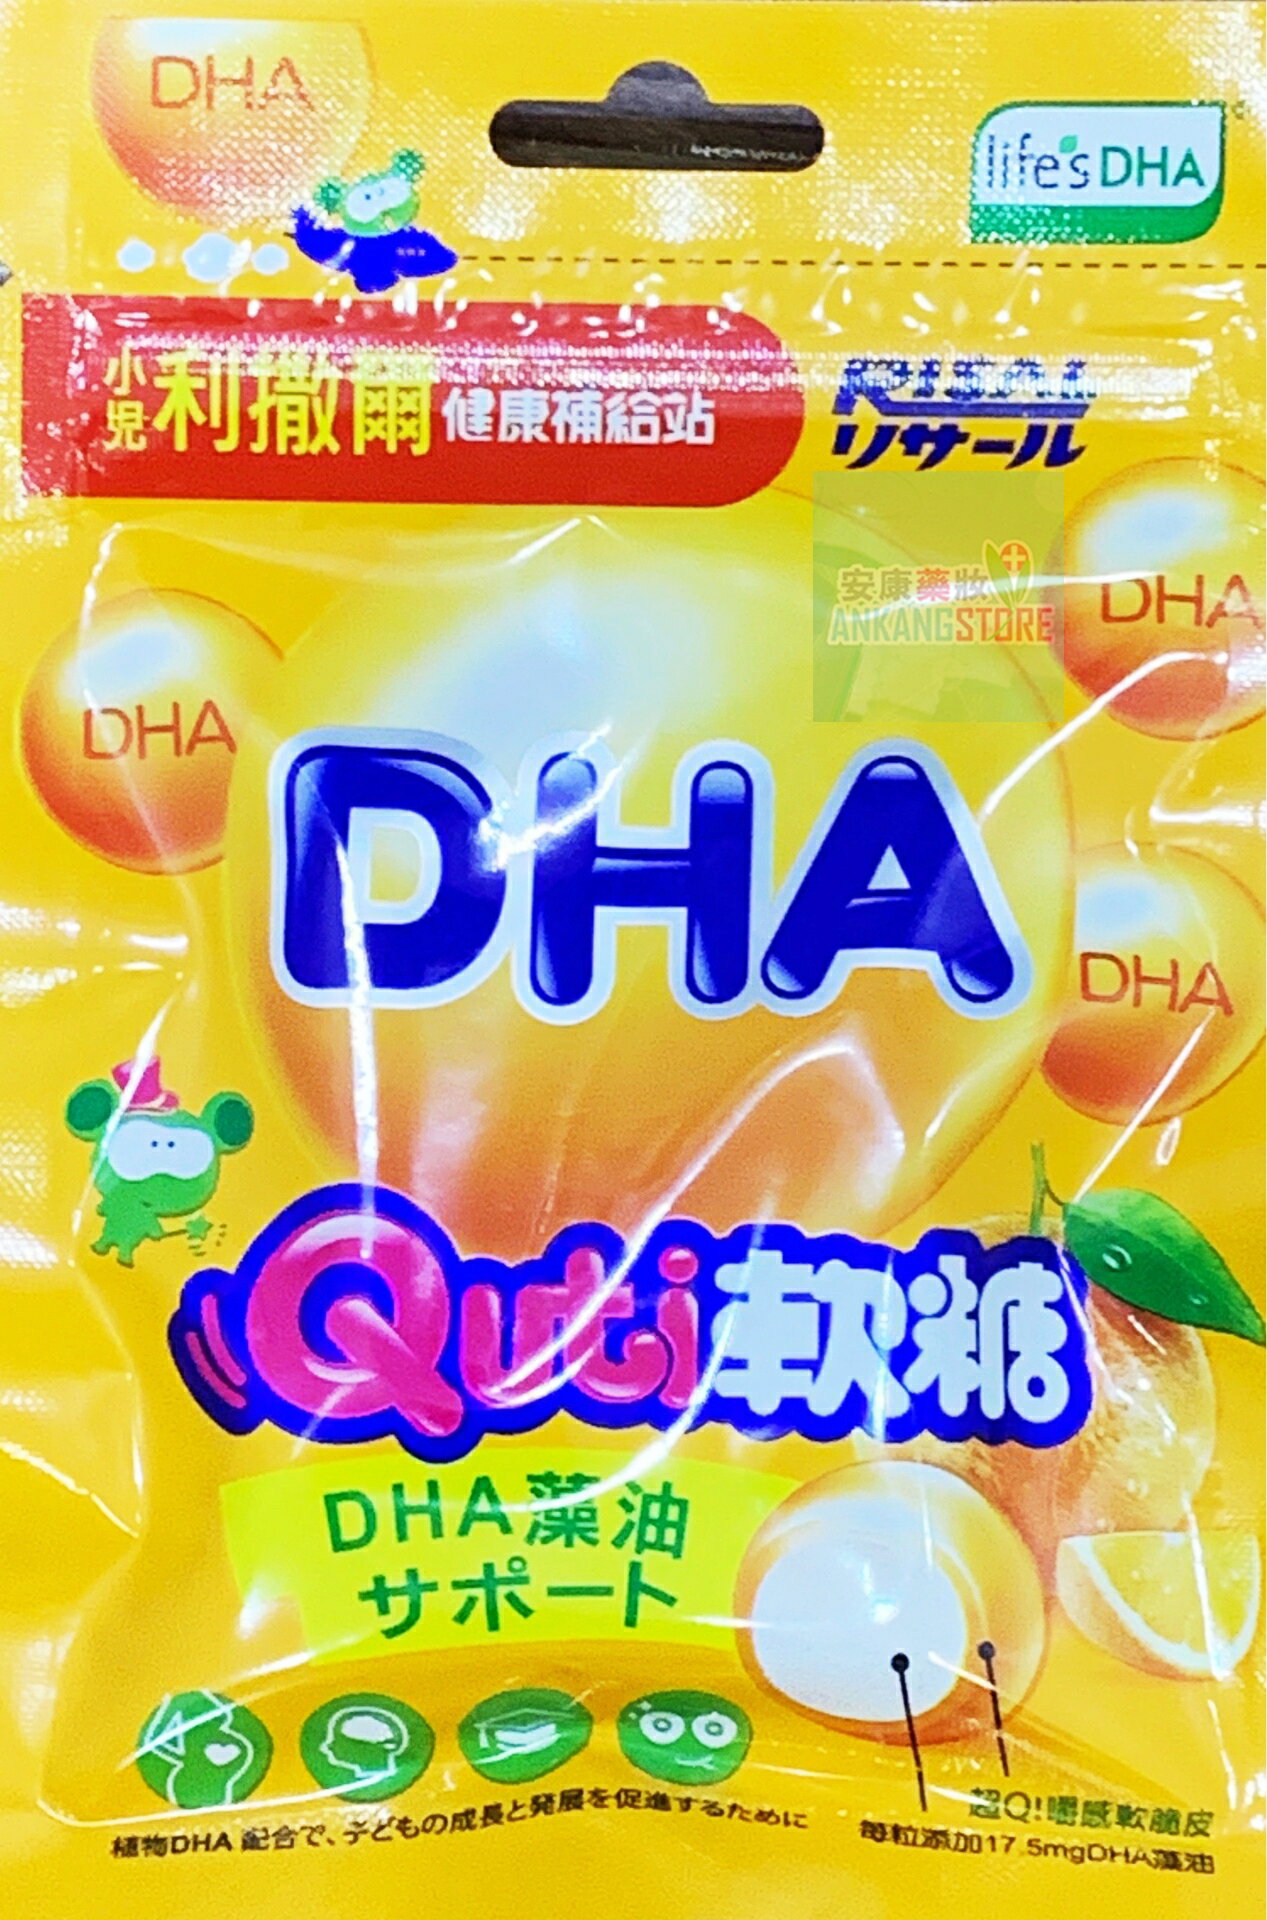 Quti軟糖(DHA)